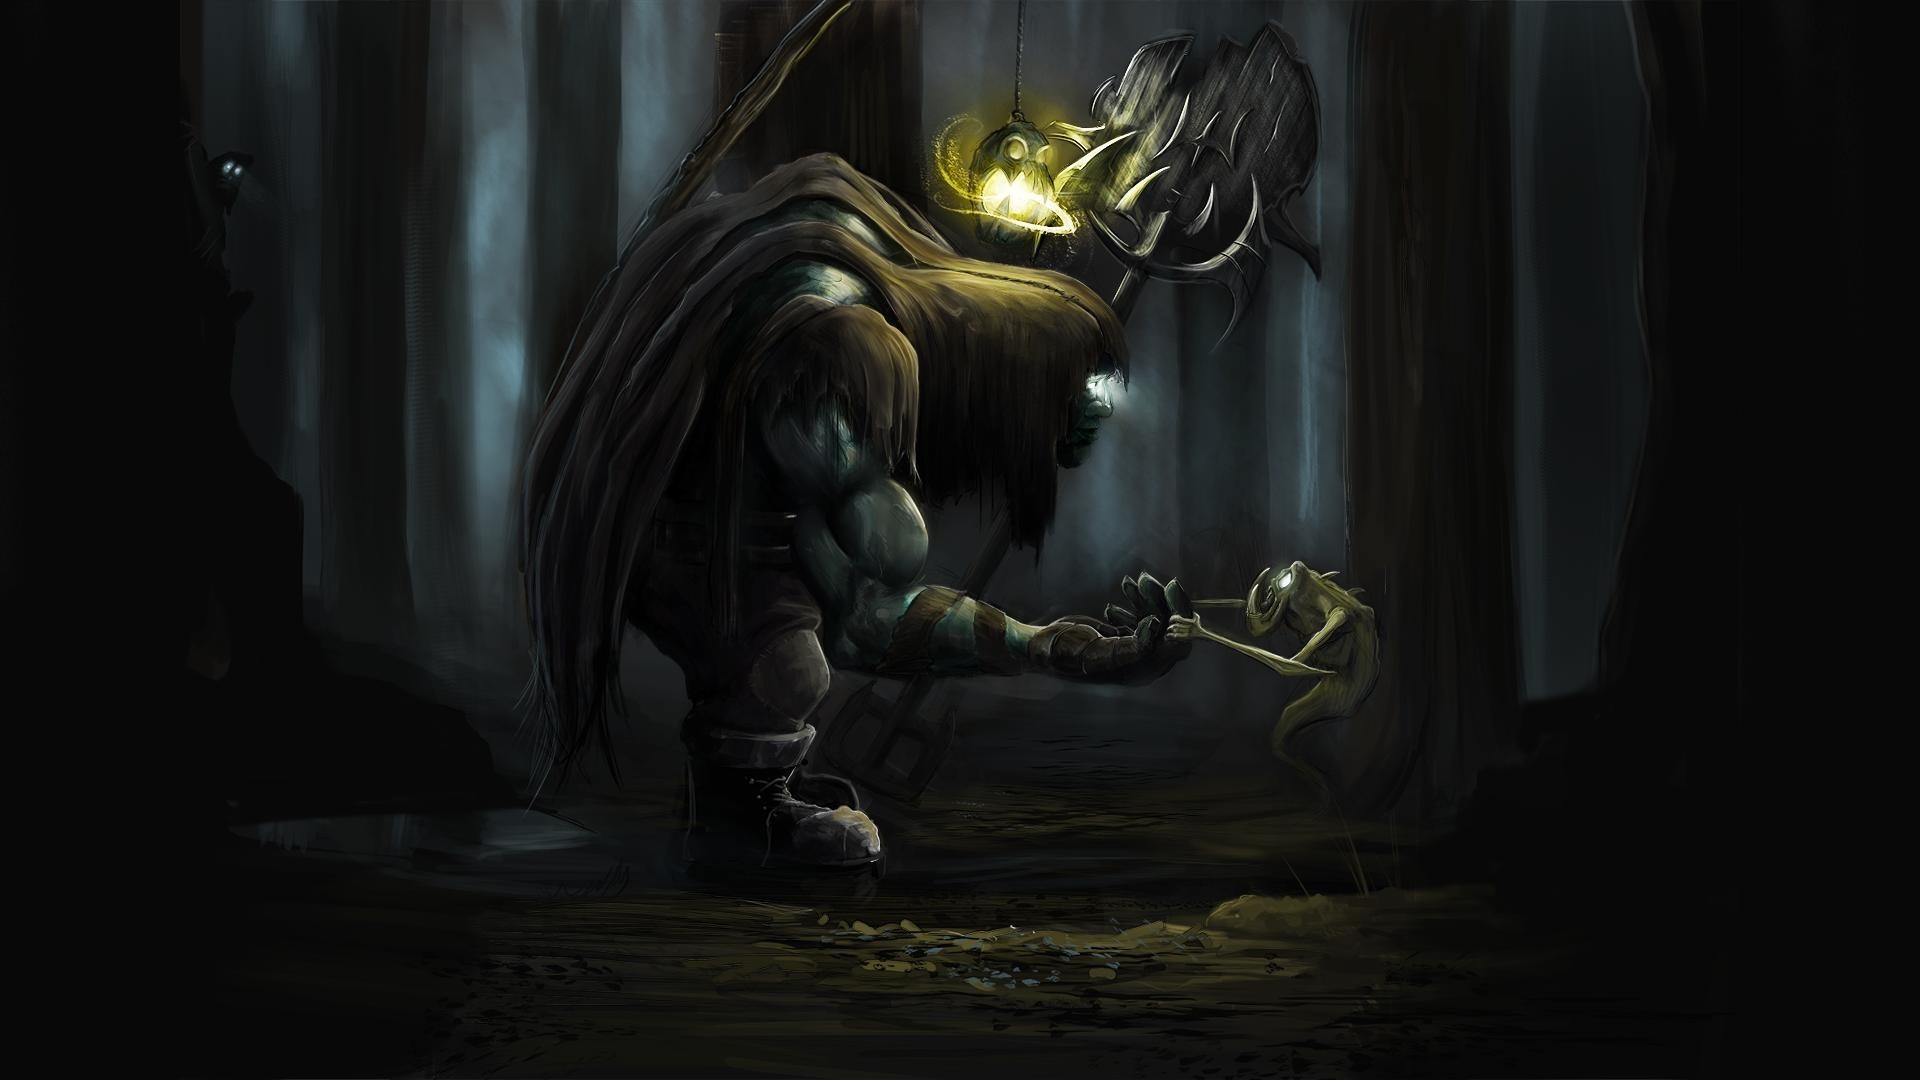 Yorick Fantasy Art Dark Creature 1920x1080